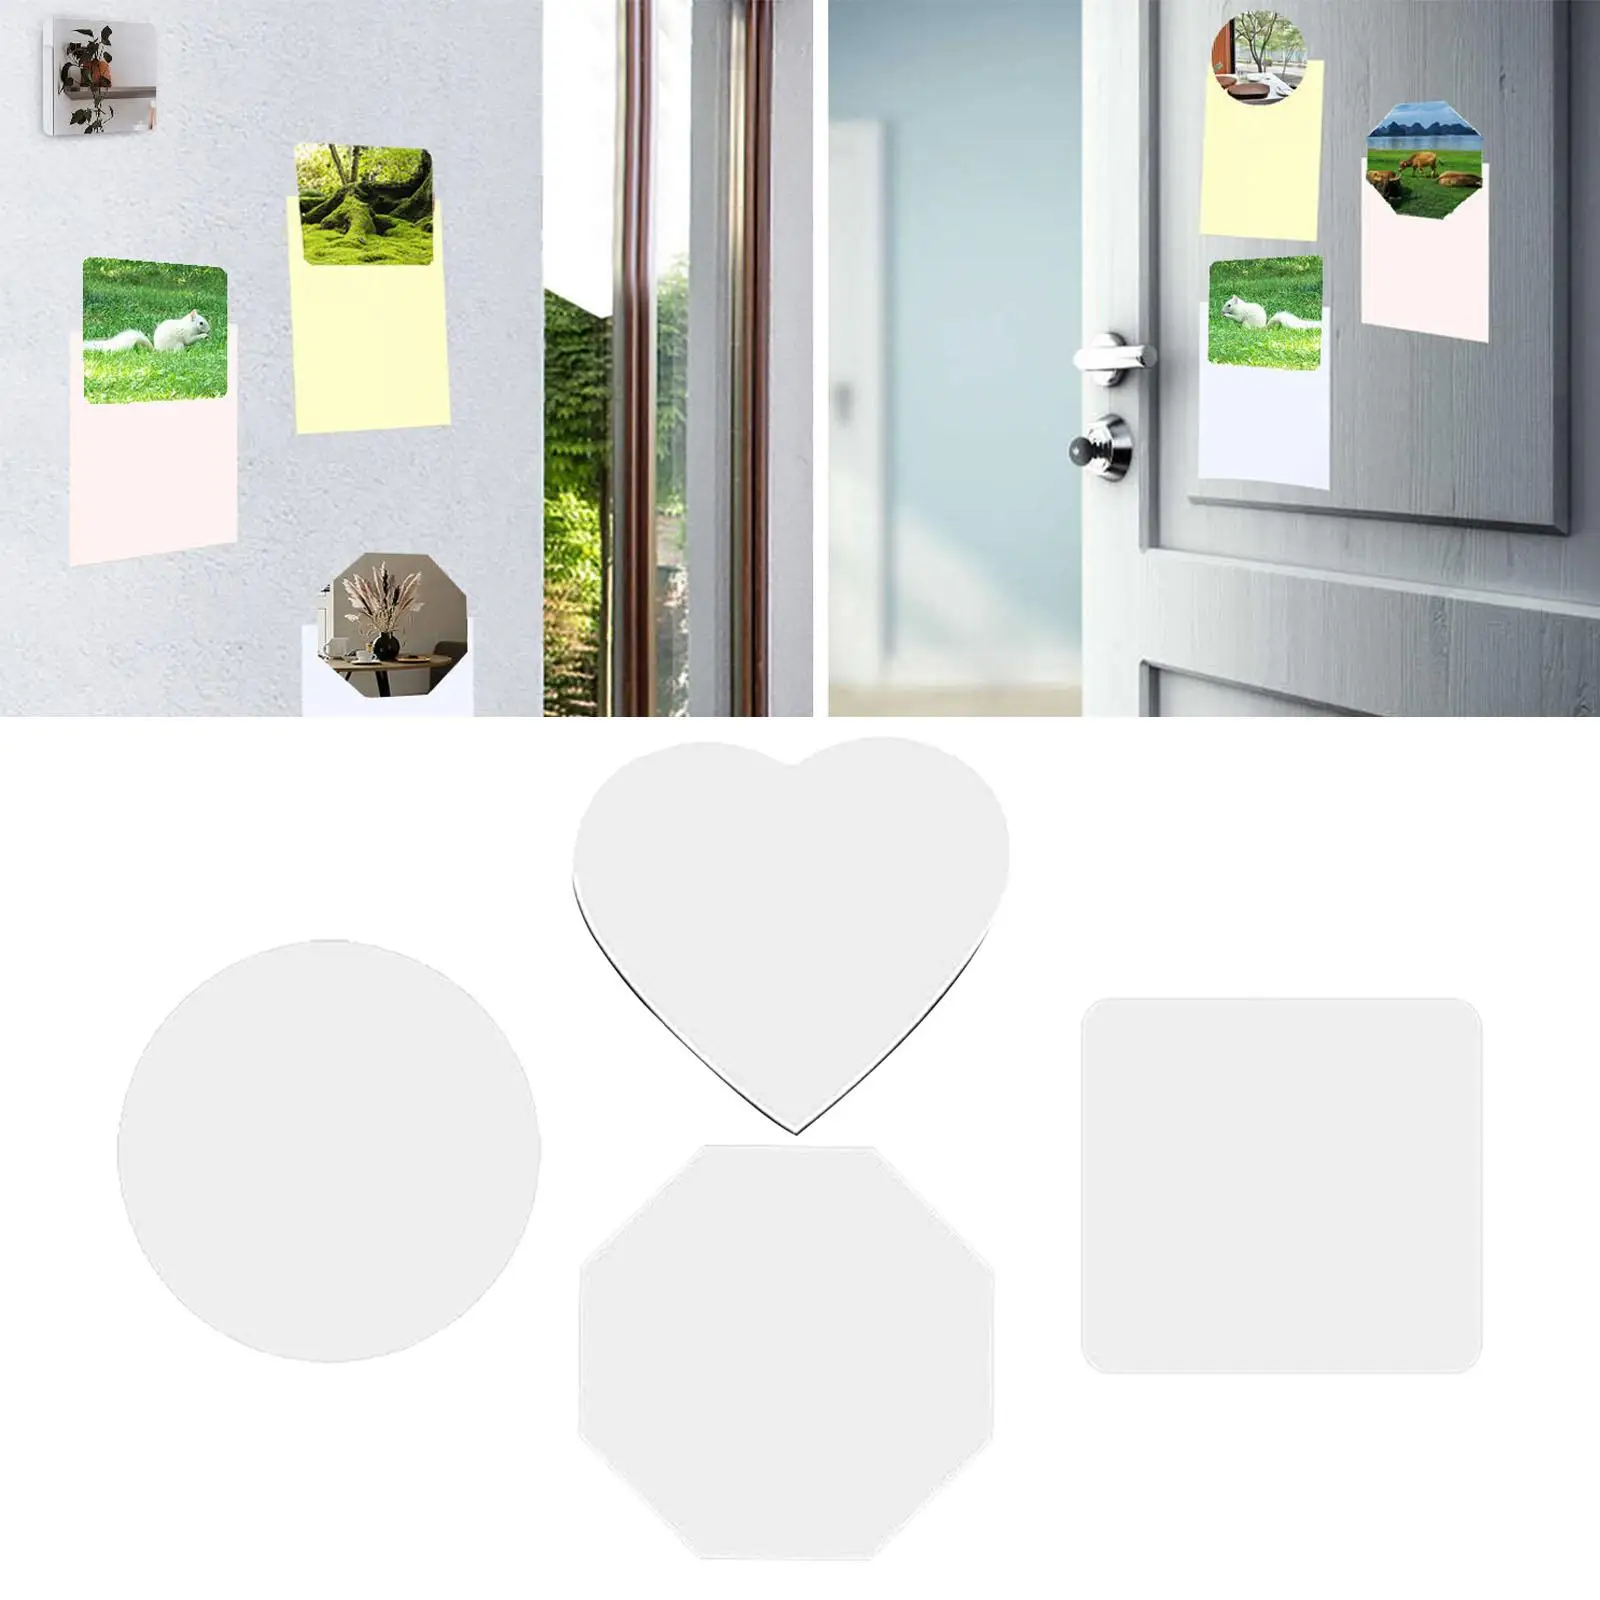 Sublimation Blank Refrigerator Magnets Crafts DIY Fridge Magnets for Fridge